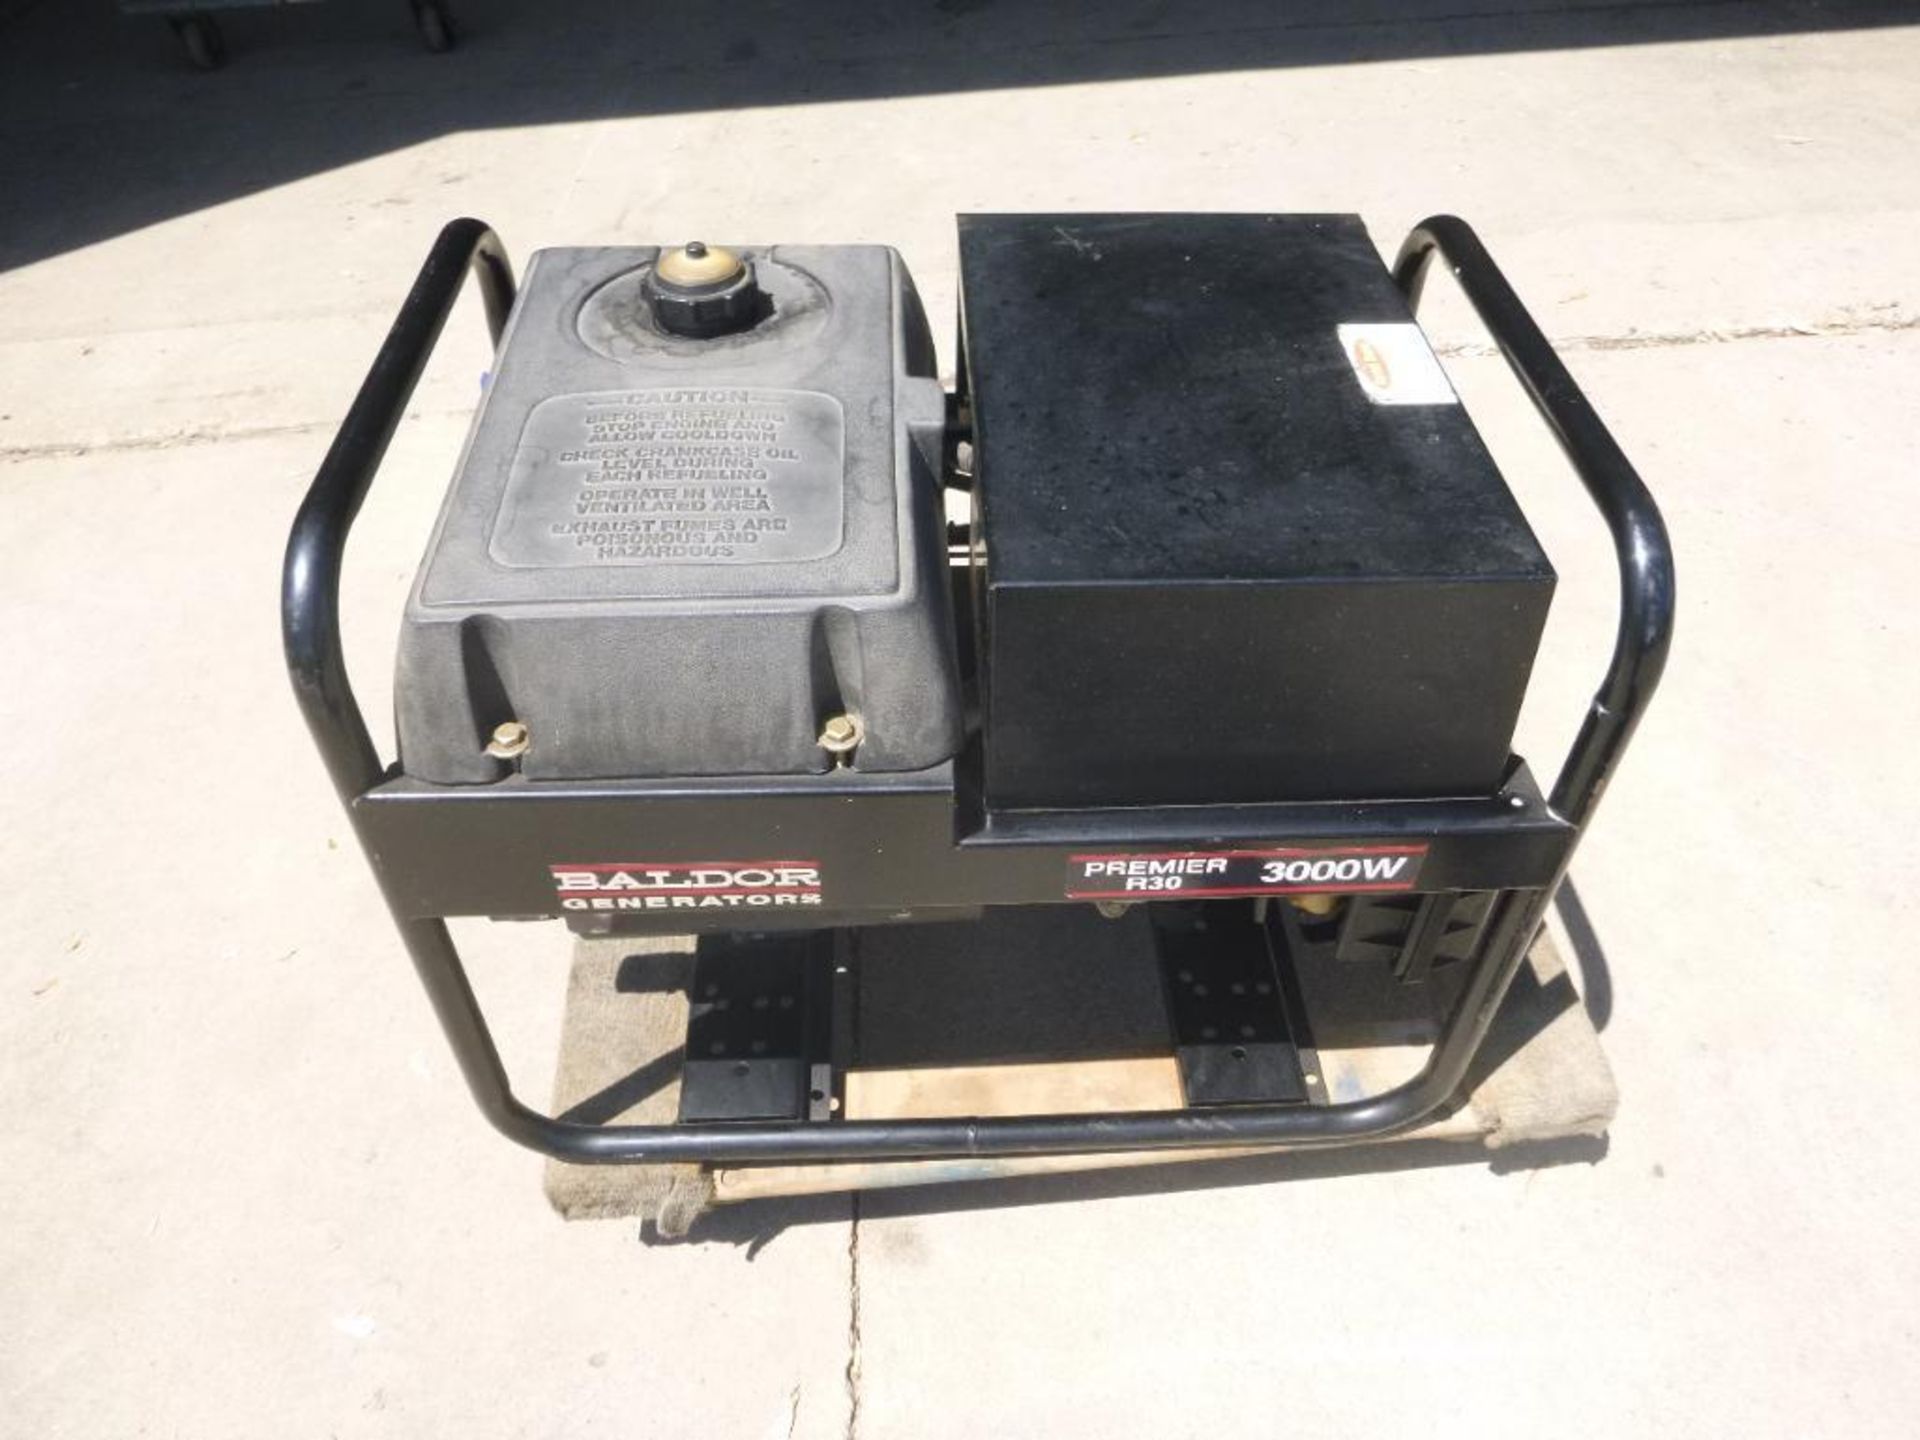 Baldor R30, Generator, 3000 Watt - Image 5 of 8